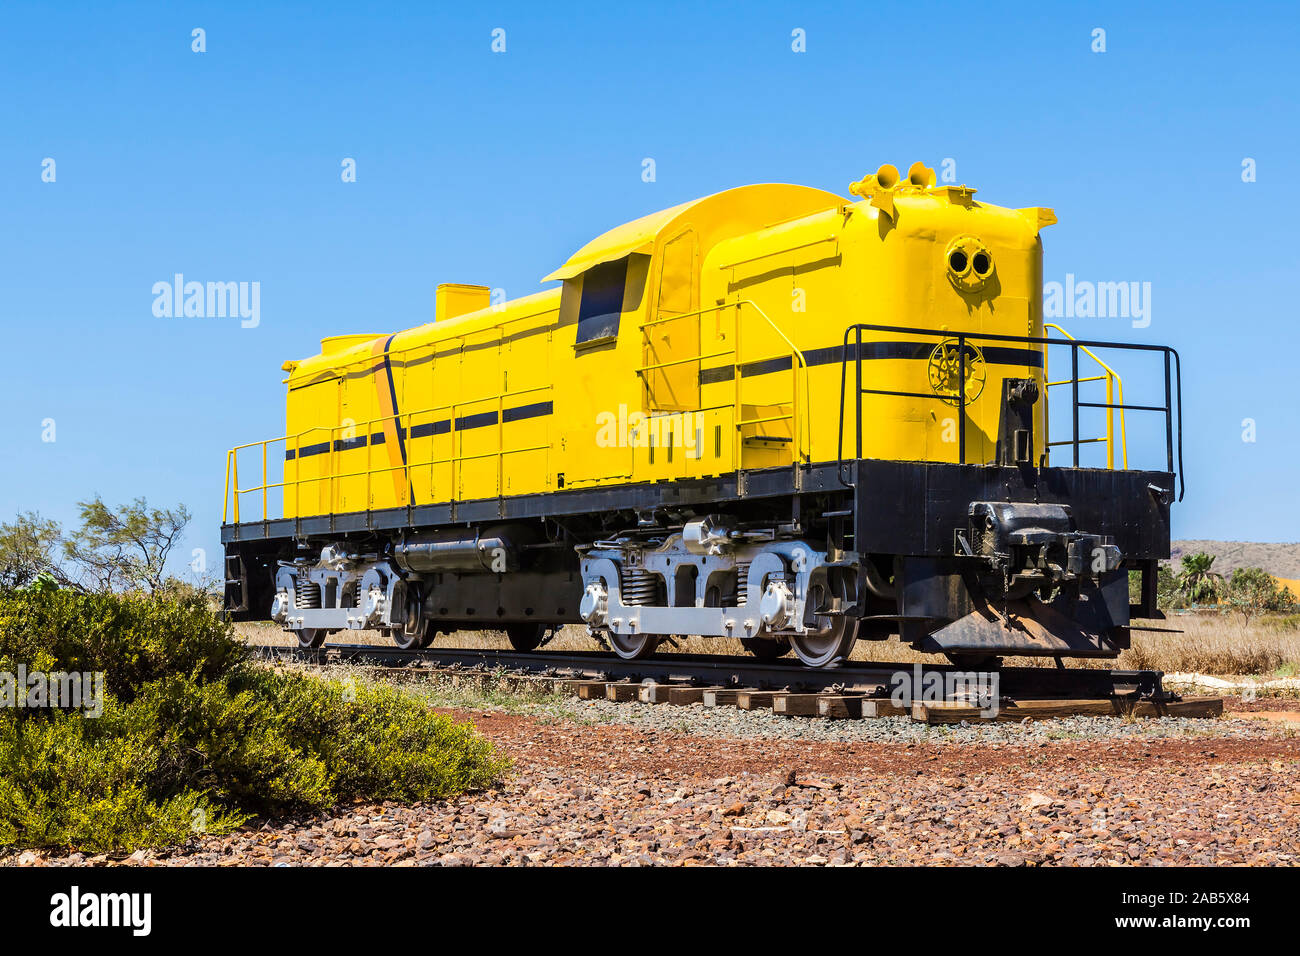 Ein gelber Zug in Australien Foto Stock